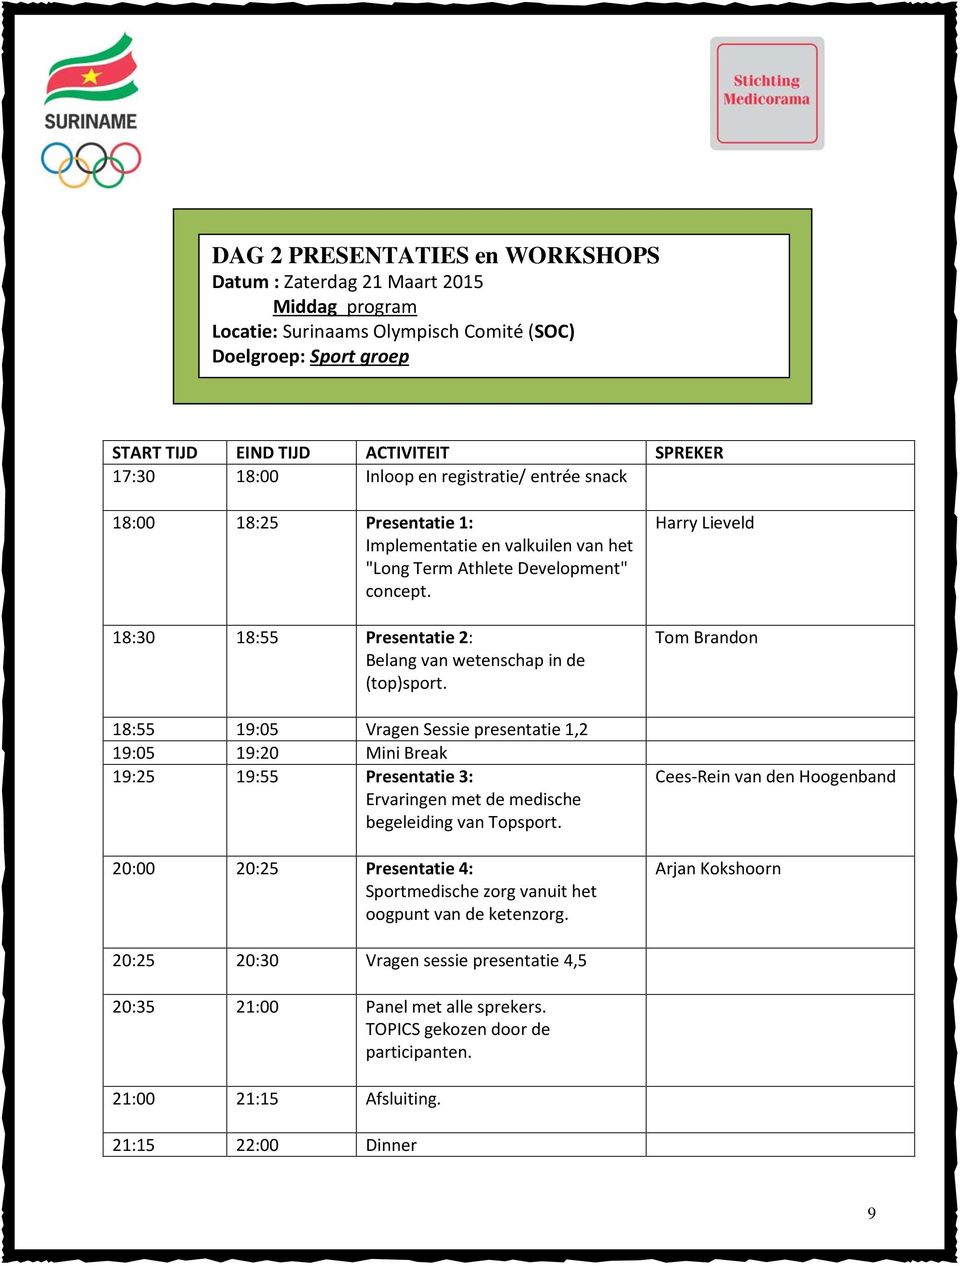 18:30 18:55 Presentatie 2: Belang van wetenschap in de (top)sport.